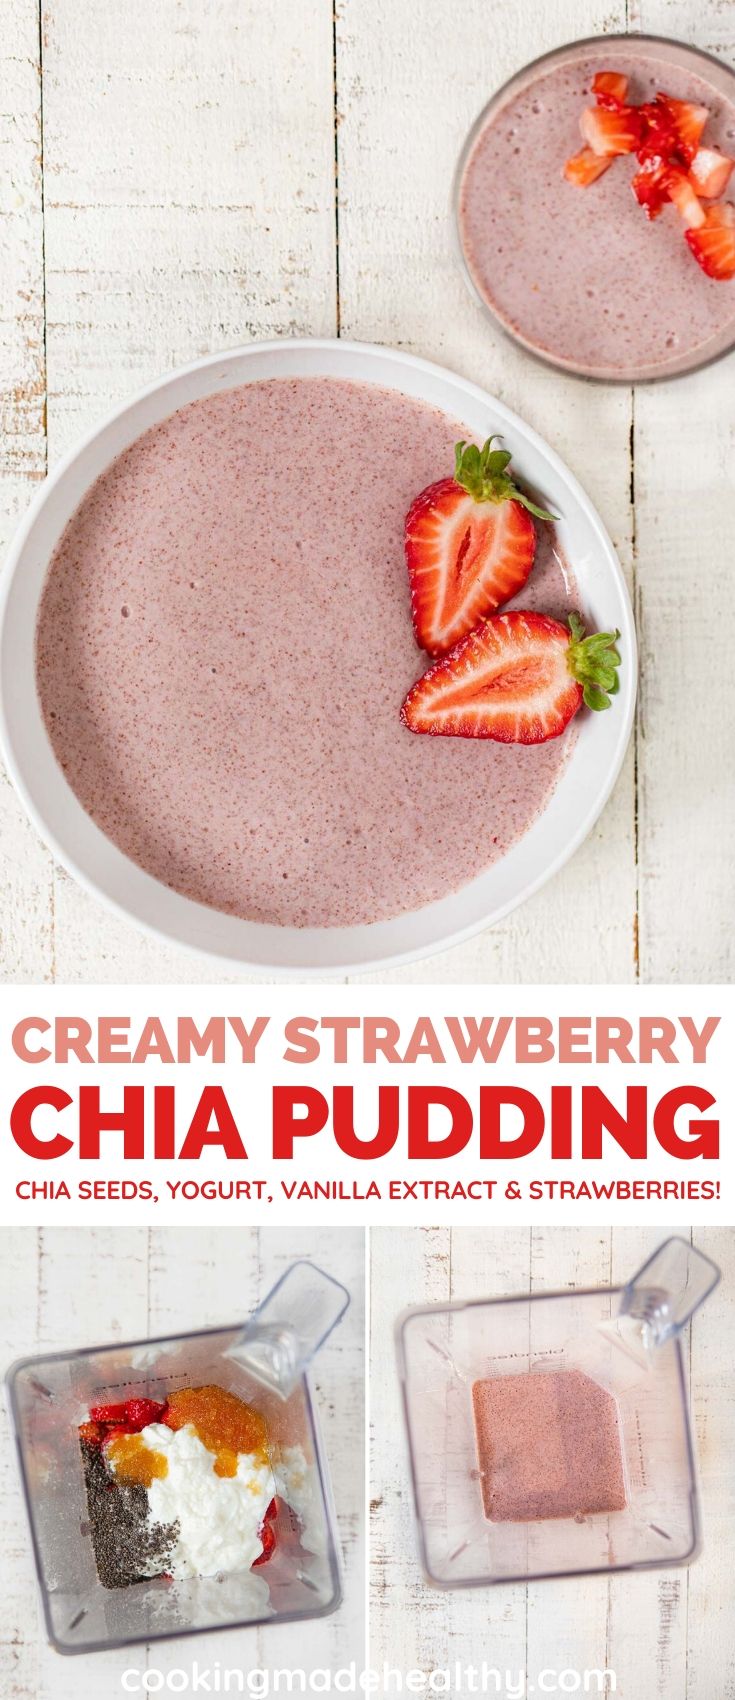 Creamy Strawberry Chia Pudding collage